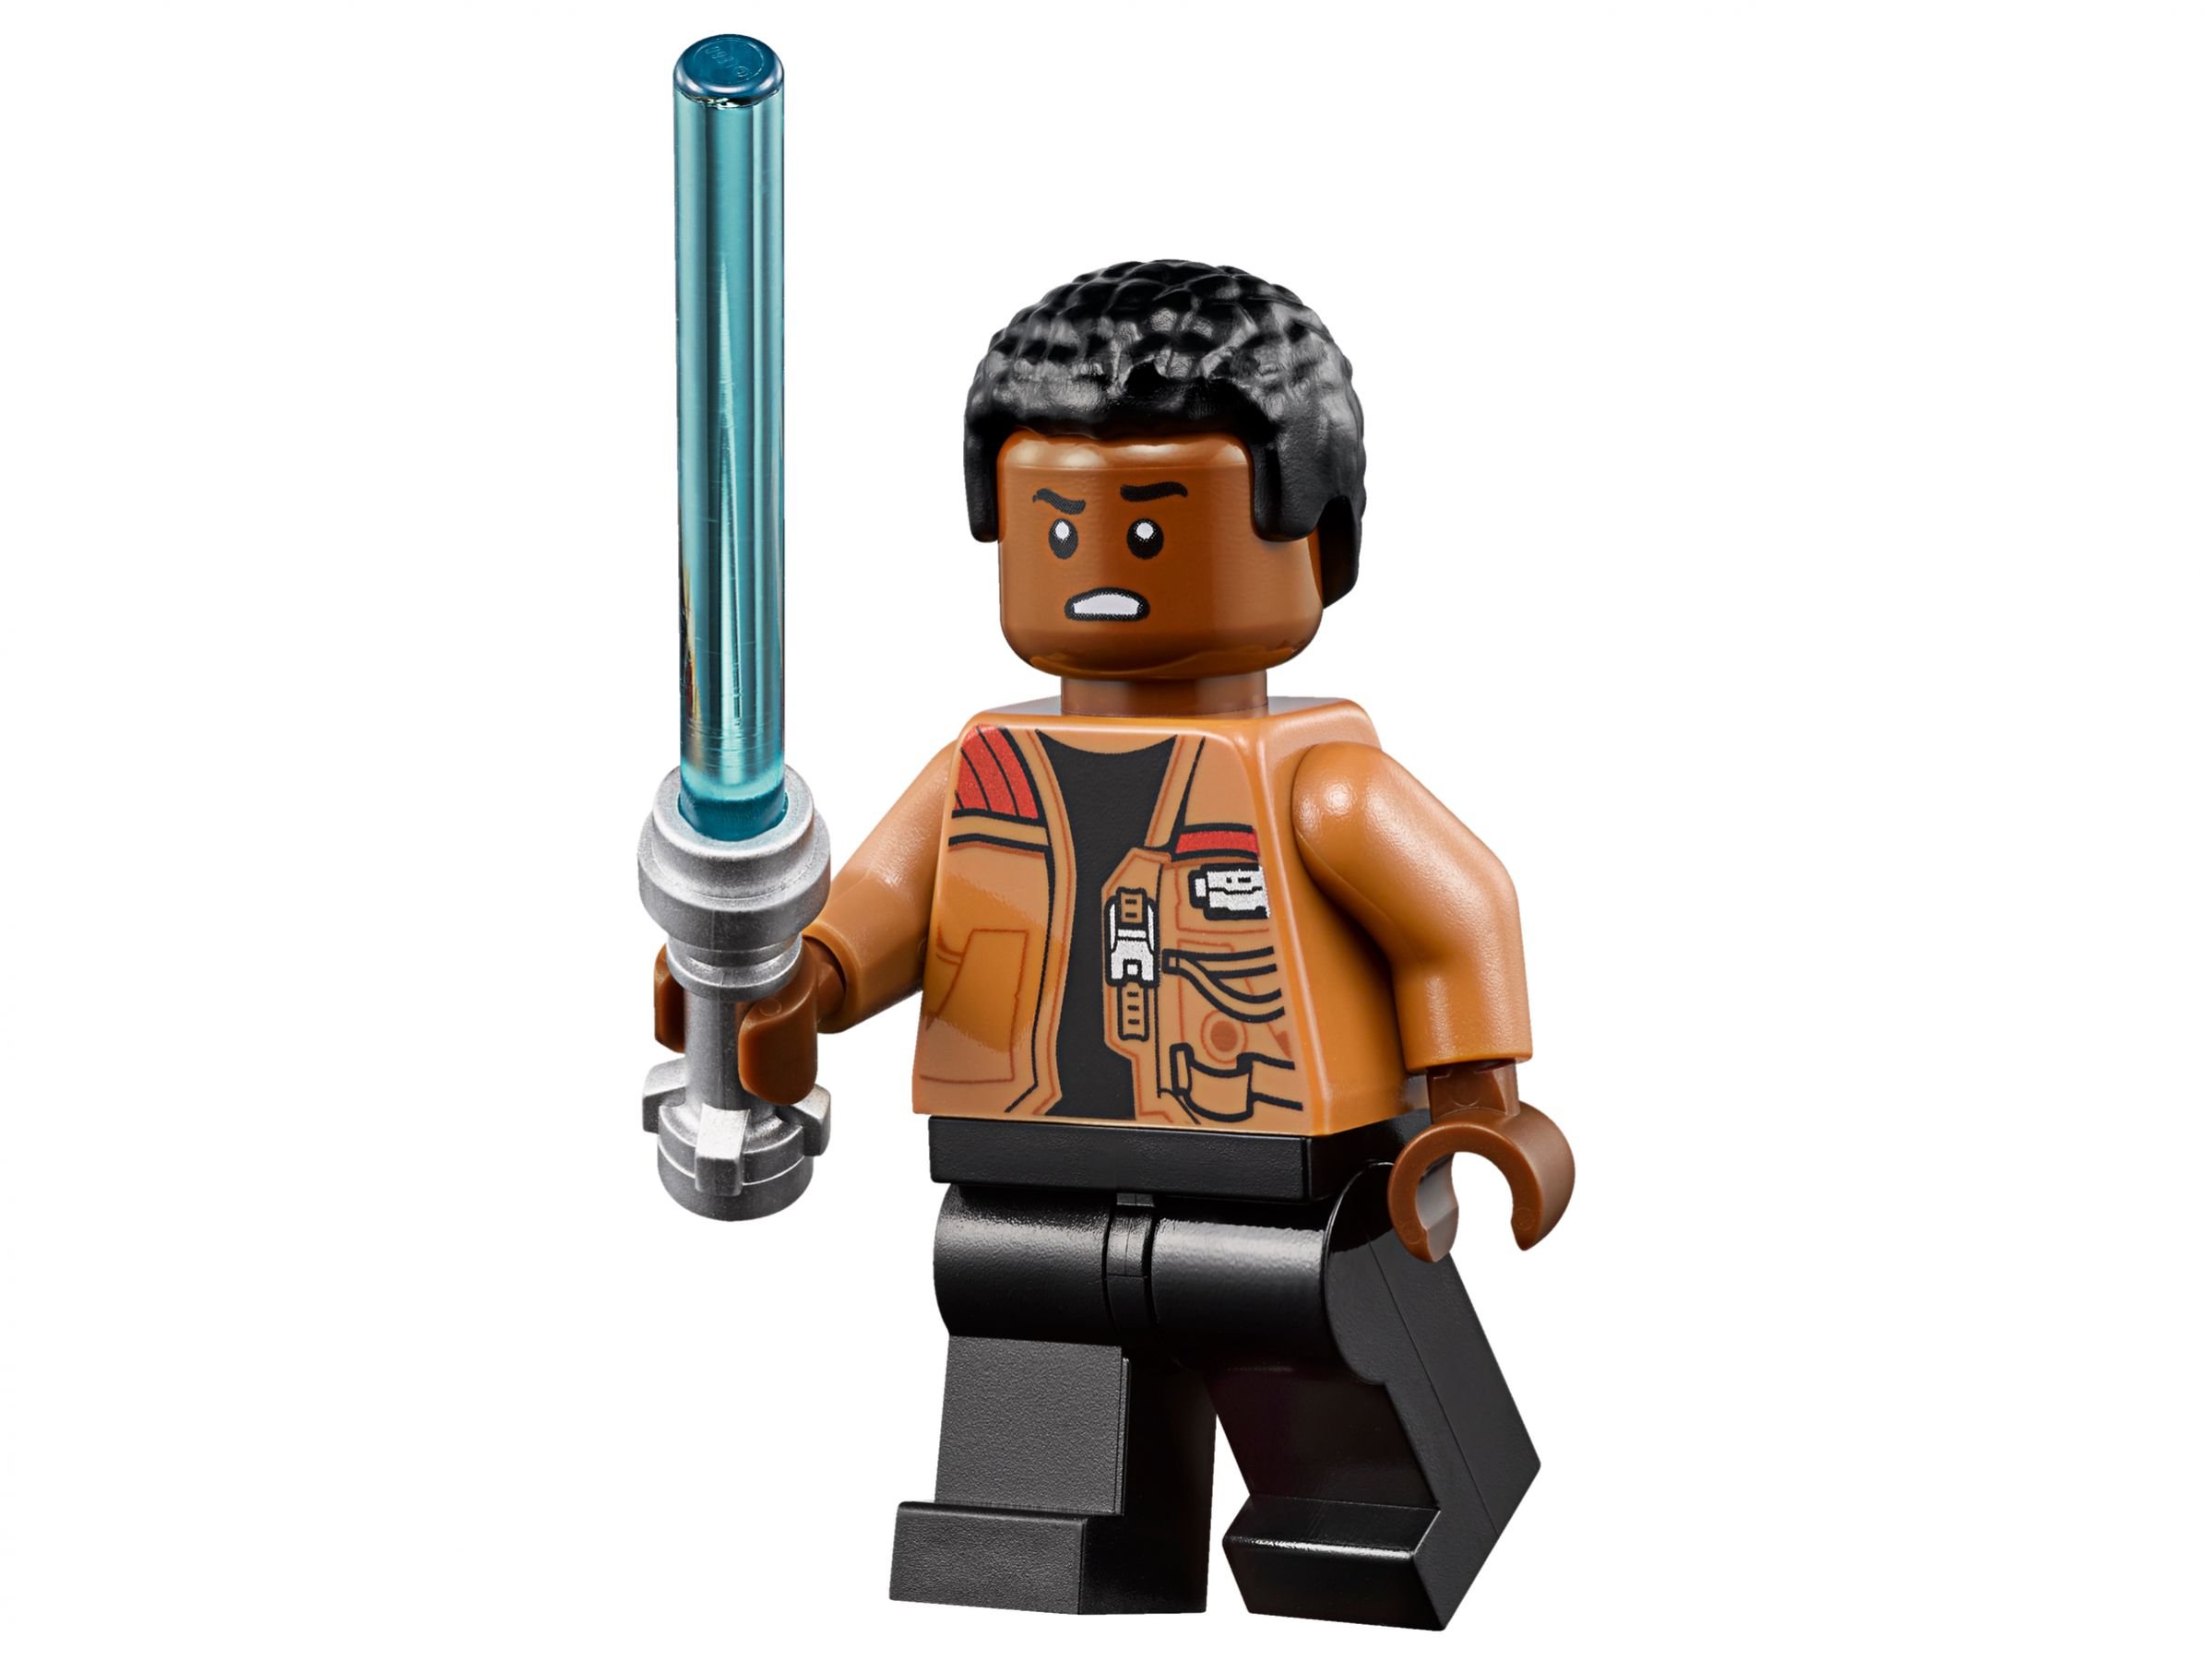 LEGO Star Wars 75139 Schlacht auf Takodana LEGO_75139_alt9.jpg